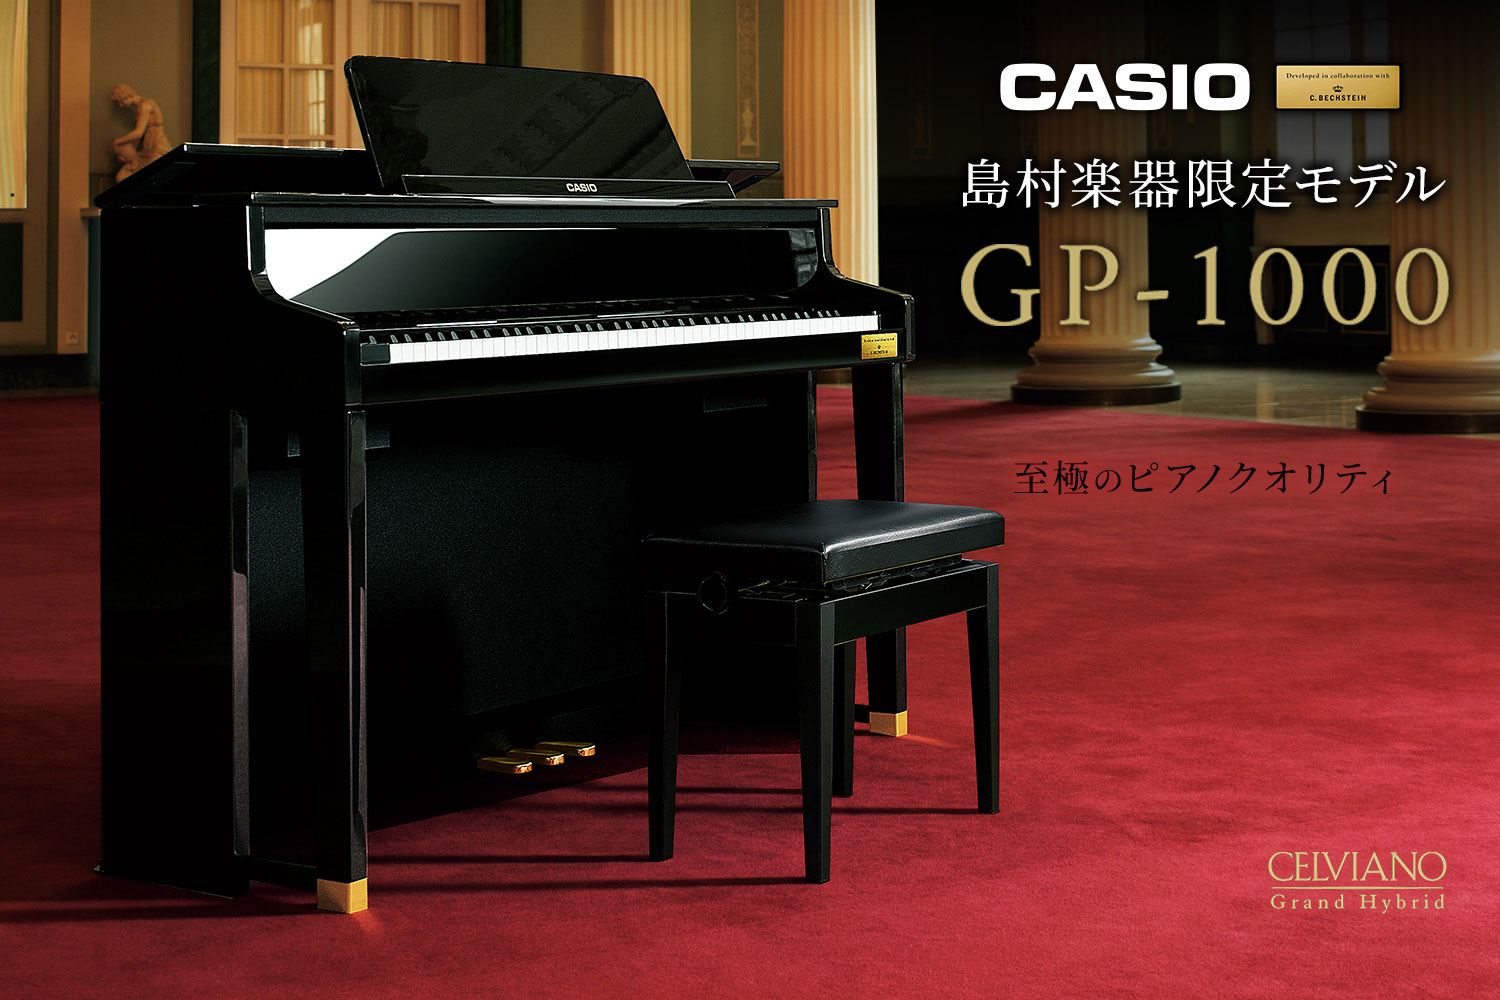 【電子ピアノ入荷情報】CASIO×C.ベヒシュタイン コラボレーション電子ピアノに島村楽器限定モデル「GP-1000」が新登場！